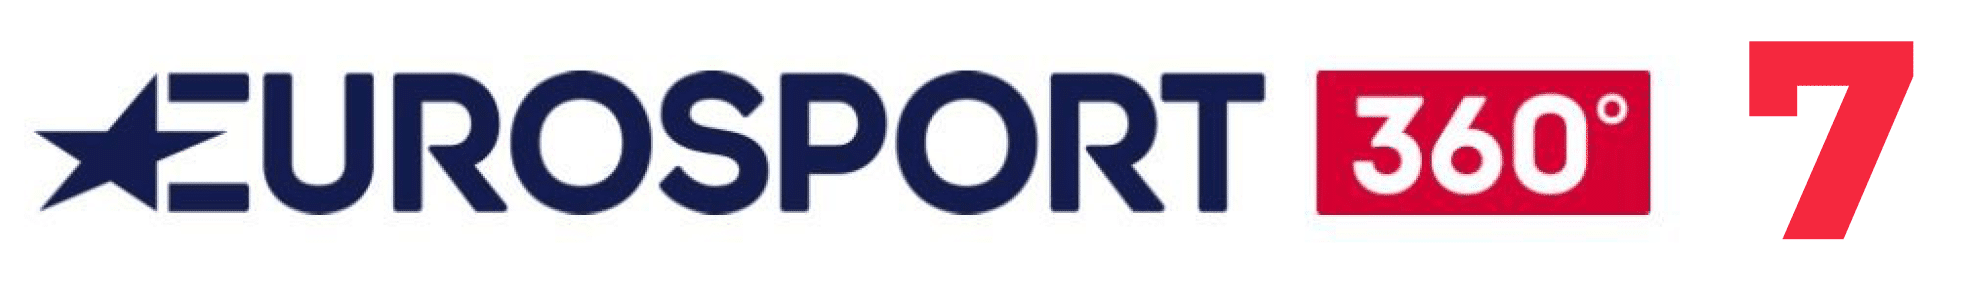 La chaîne Eurosport 360 7.